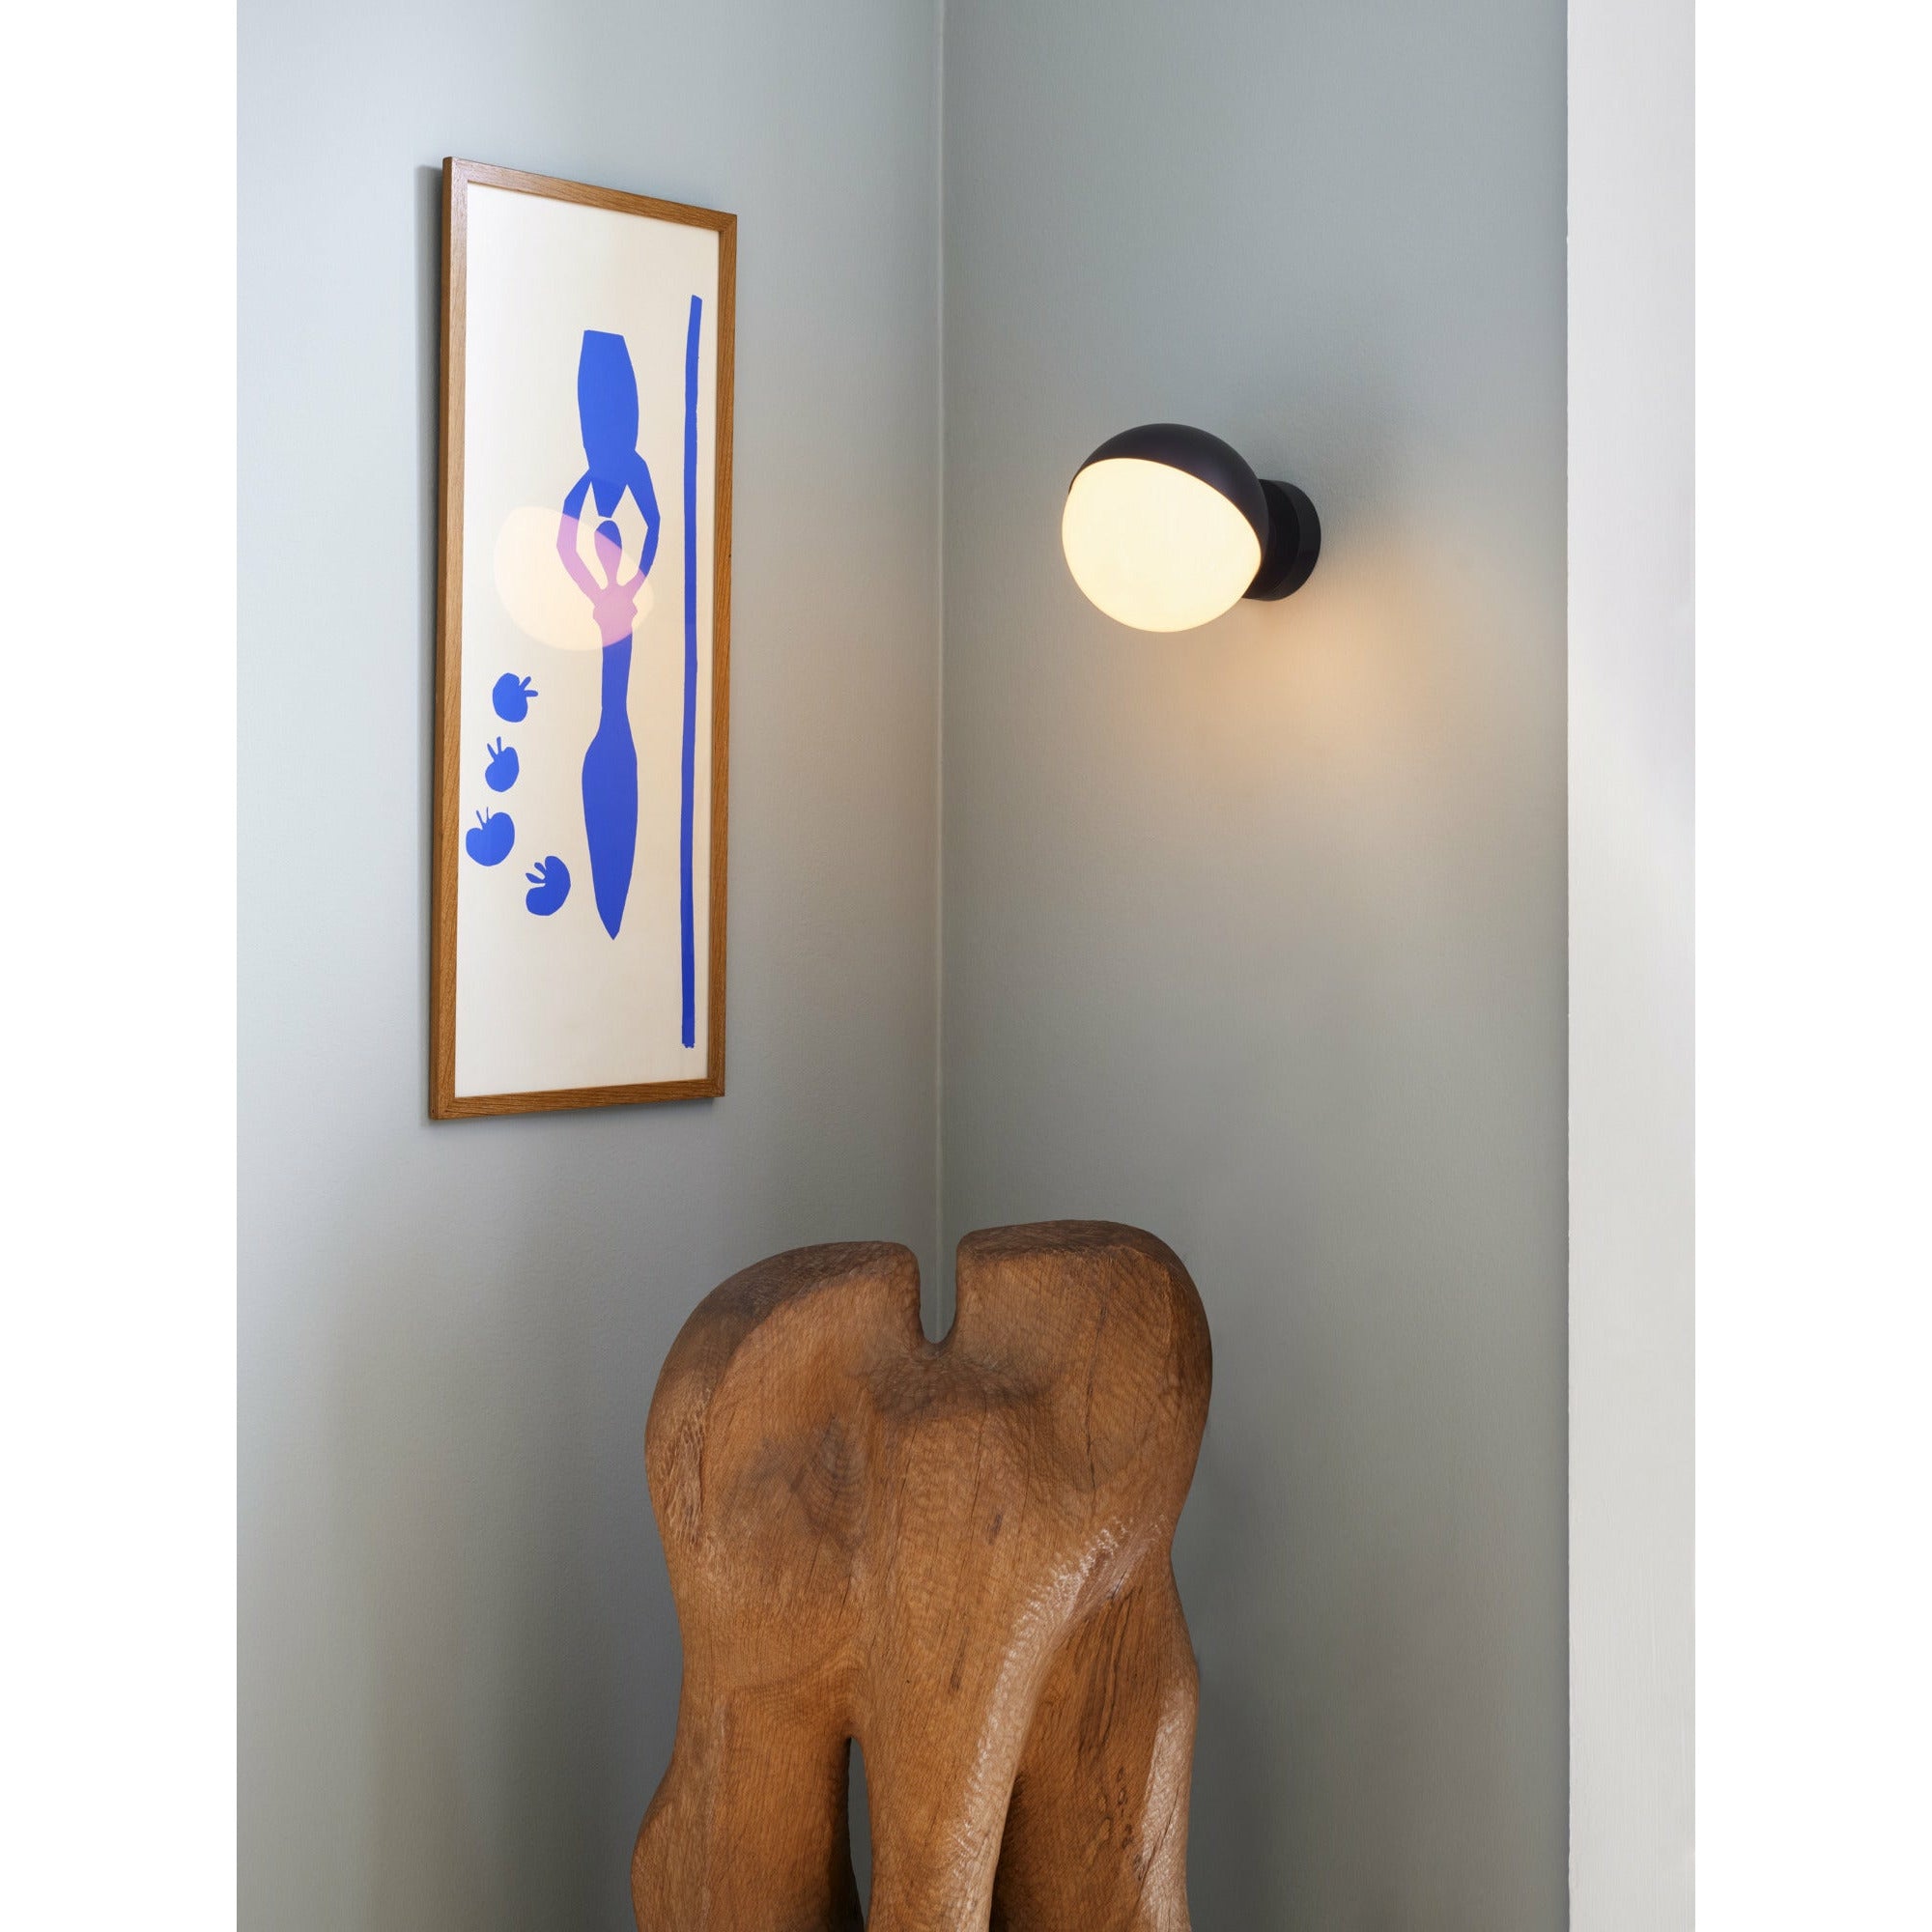 Louis Poulsen Vl Studio 150 Wall Lamp, Black